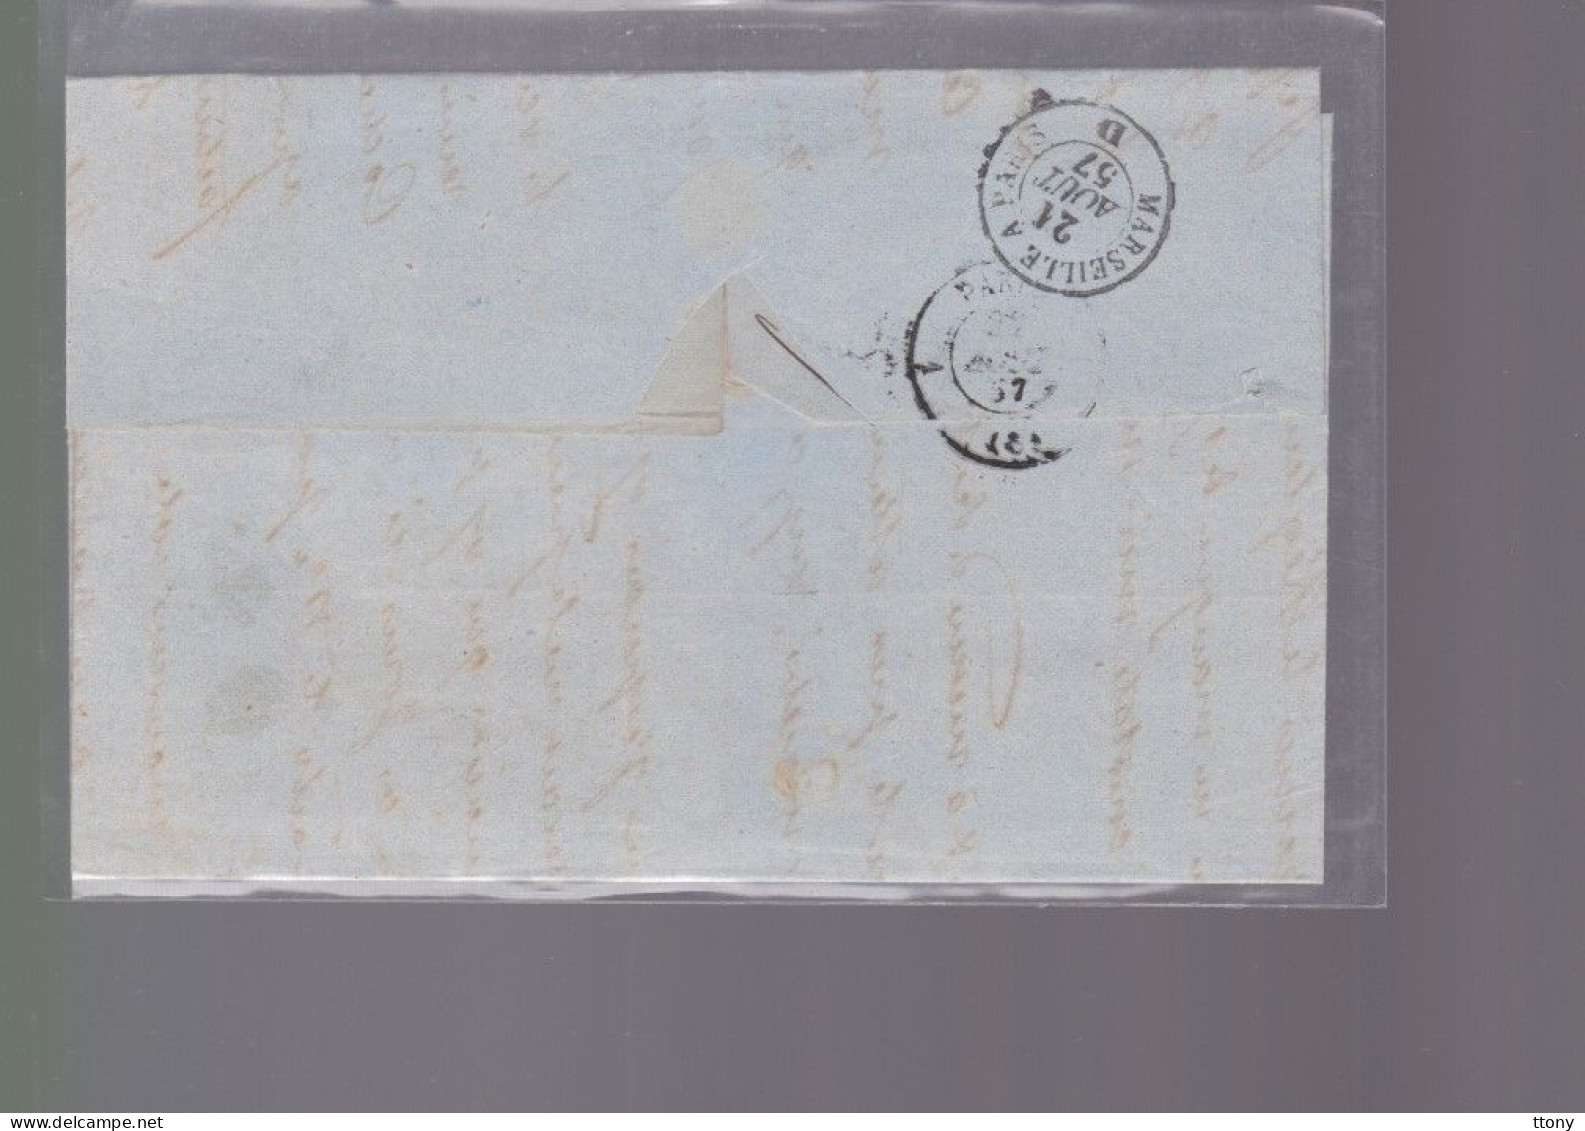 Un  Timbre  Napoléon III   N°  14     20 C Bleu   Sur  Lettre      1854   Destination    Grandvilliers - 1849-1876: Klassik